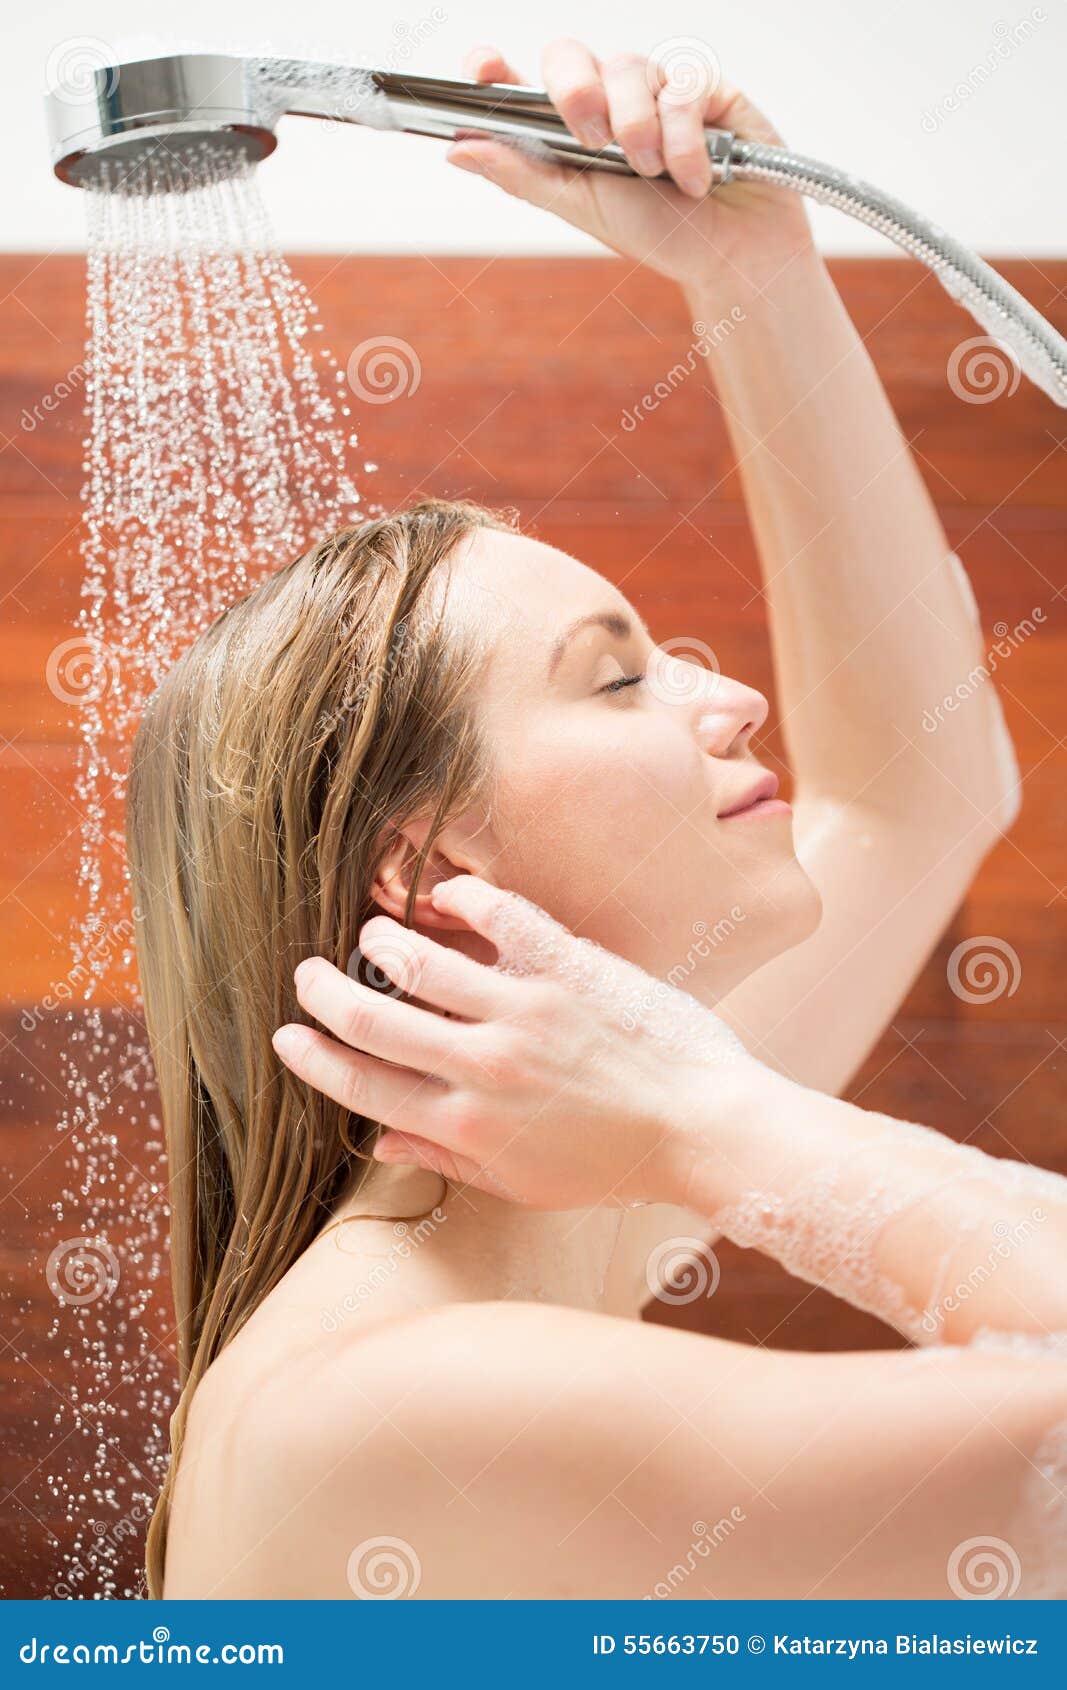 Женщину моют в душе. Девушка моет голову. Мытье волос в ванной. Мытье головы в душе. Моется под душем.